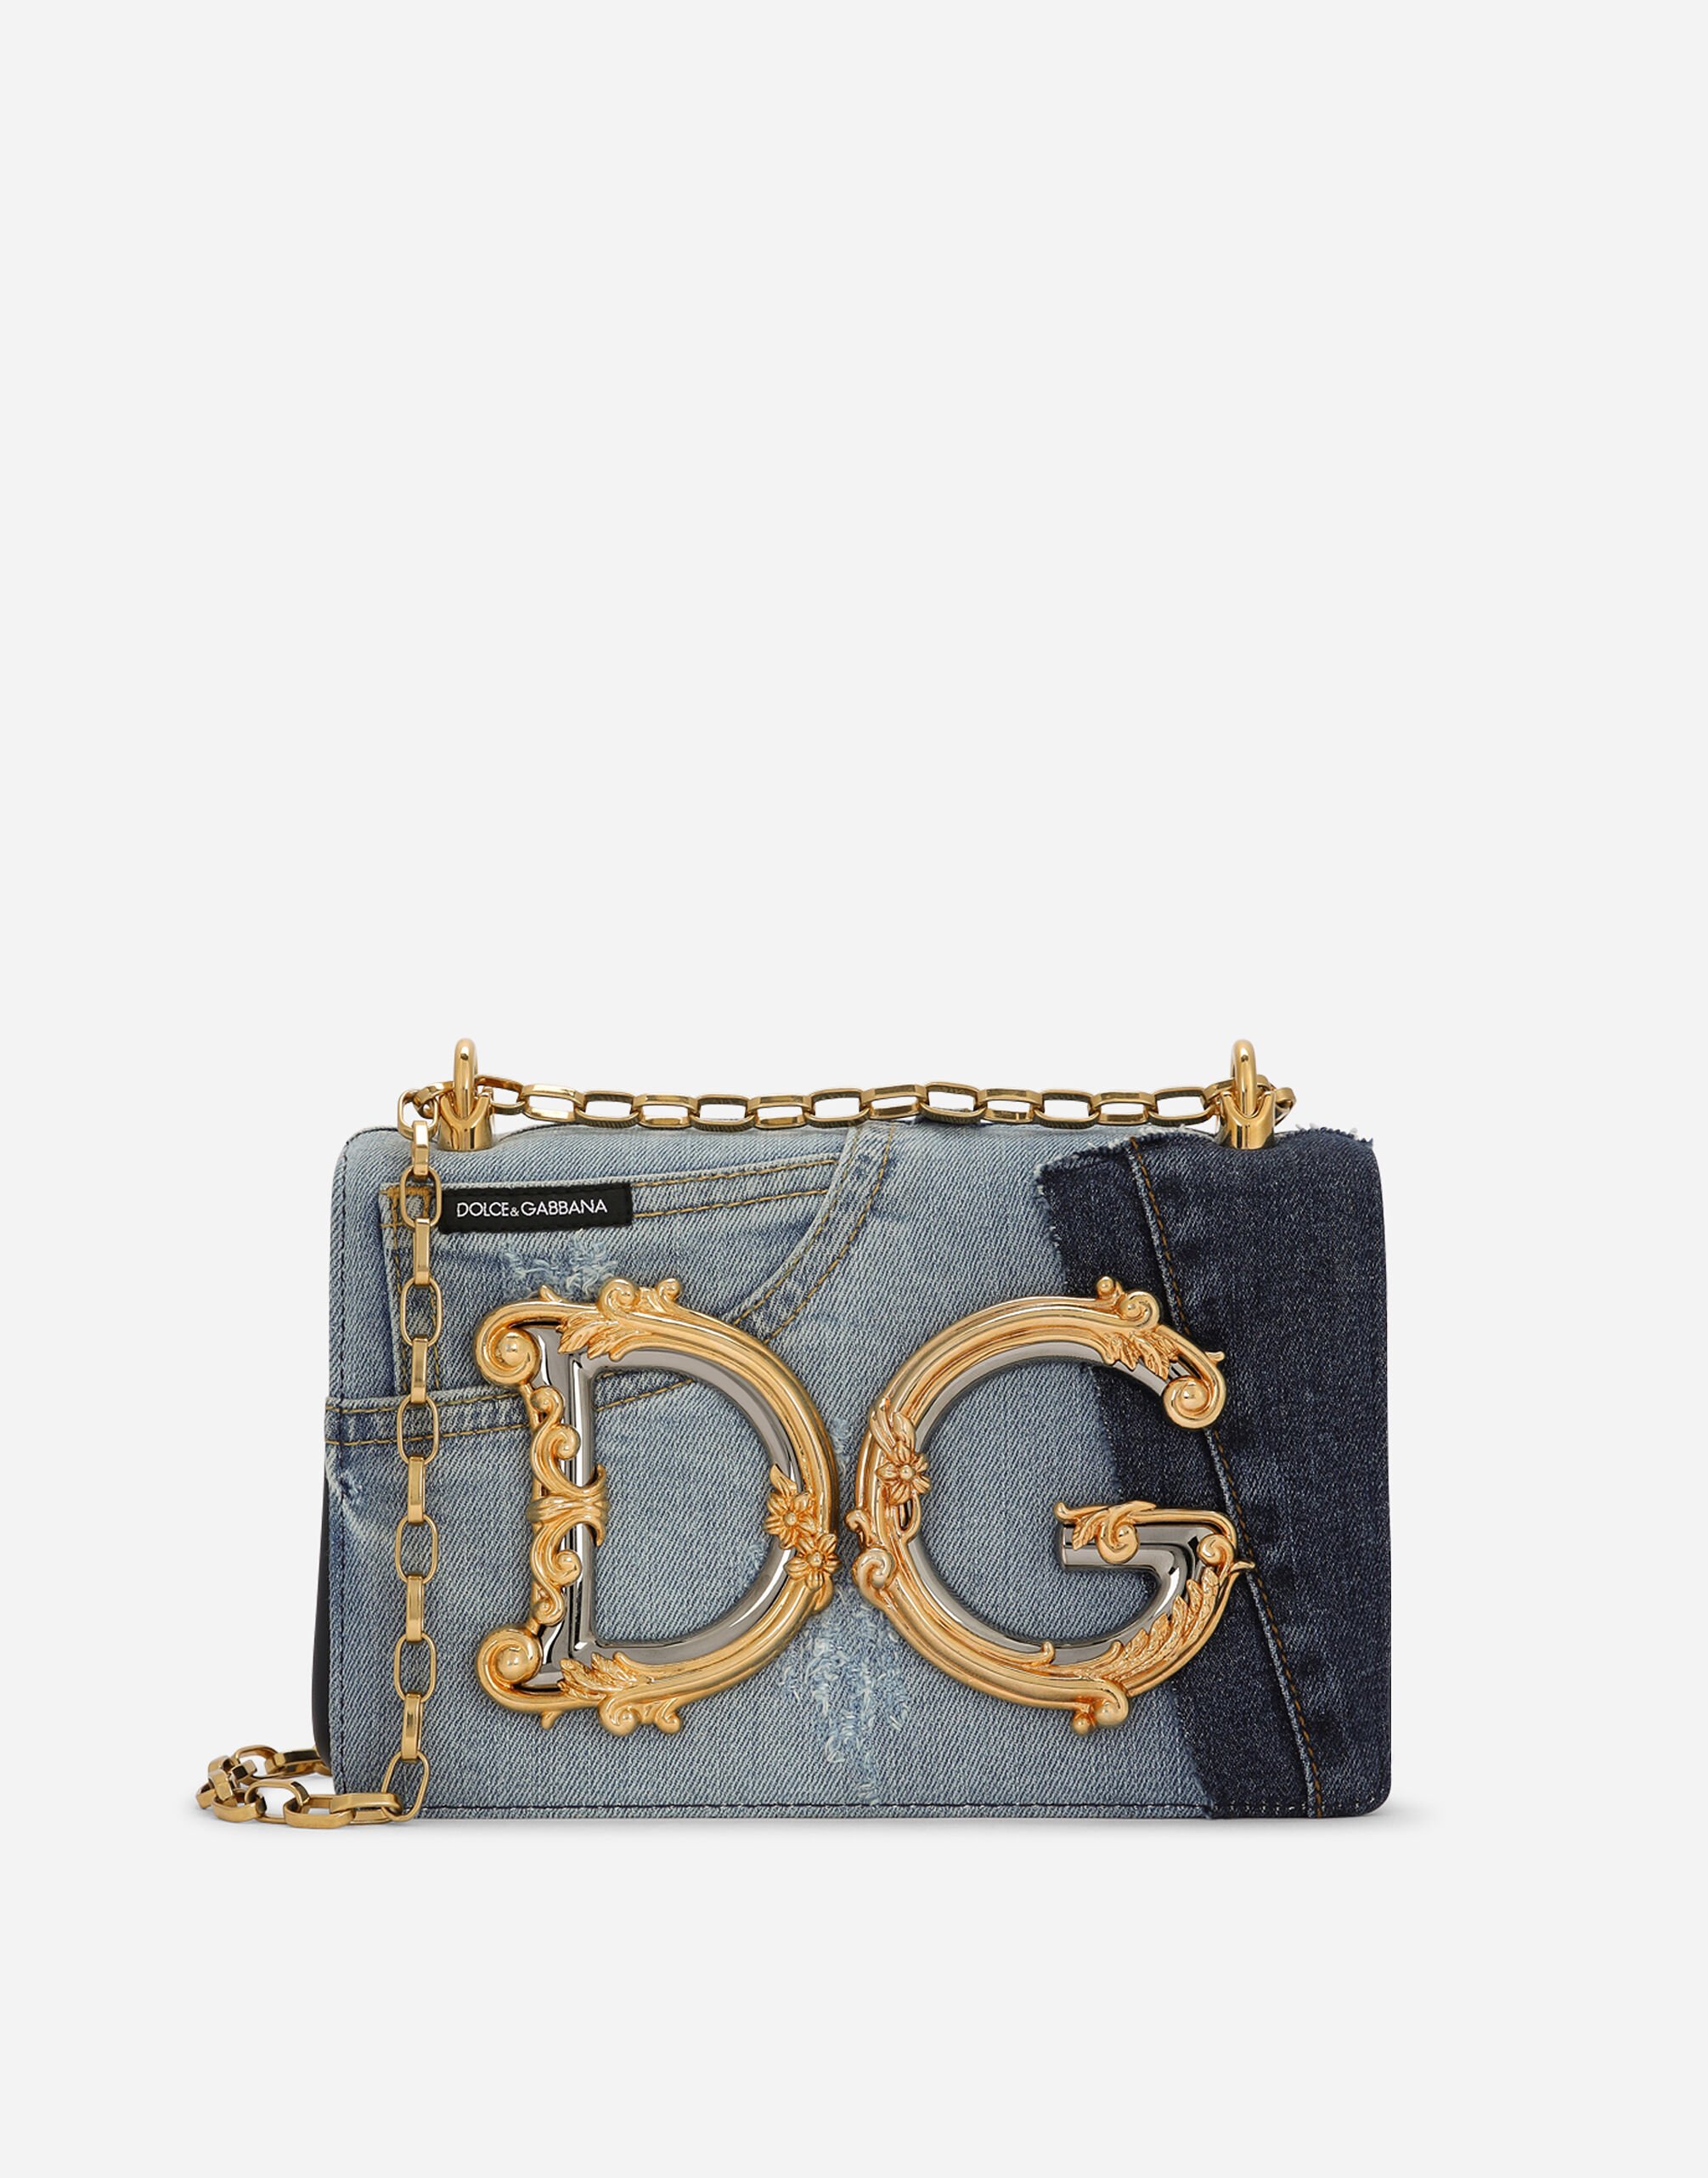 Medium DG Girls shoulder bag in Red for | Dolce&Gabbana® US